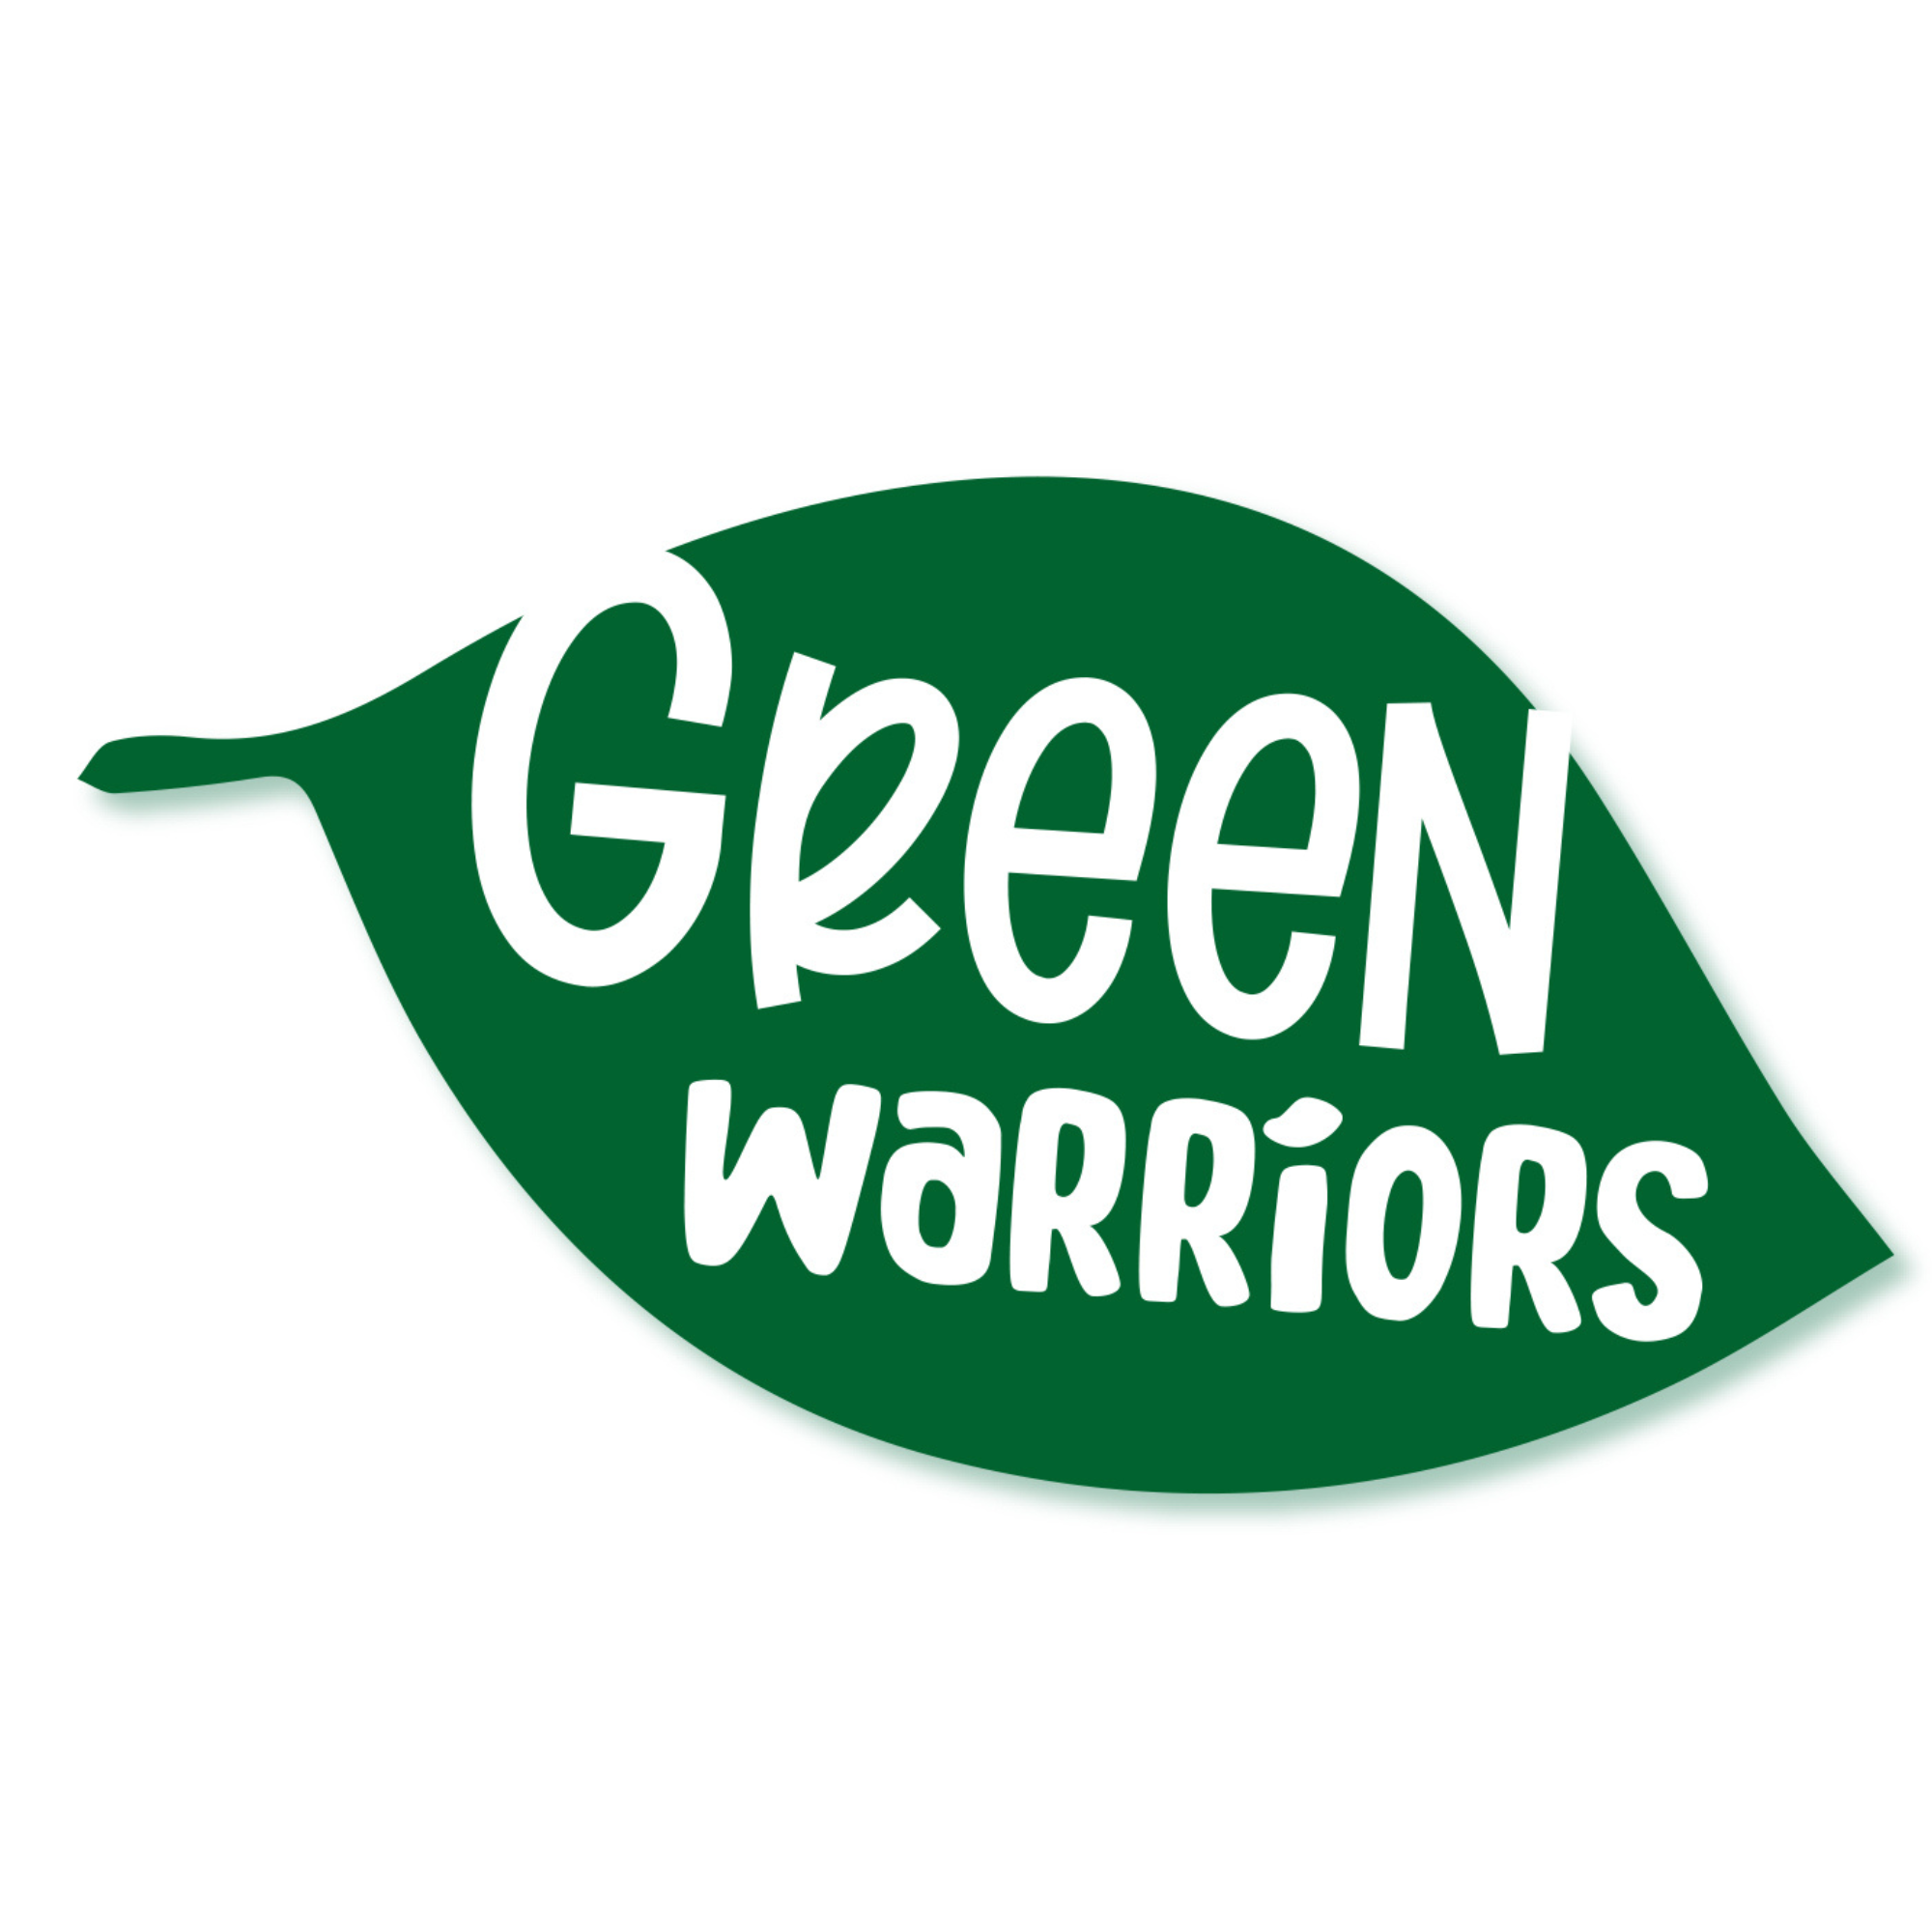 green warriors